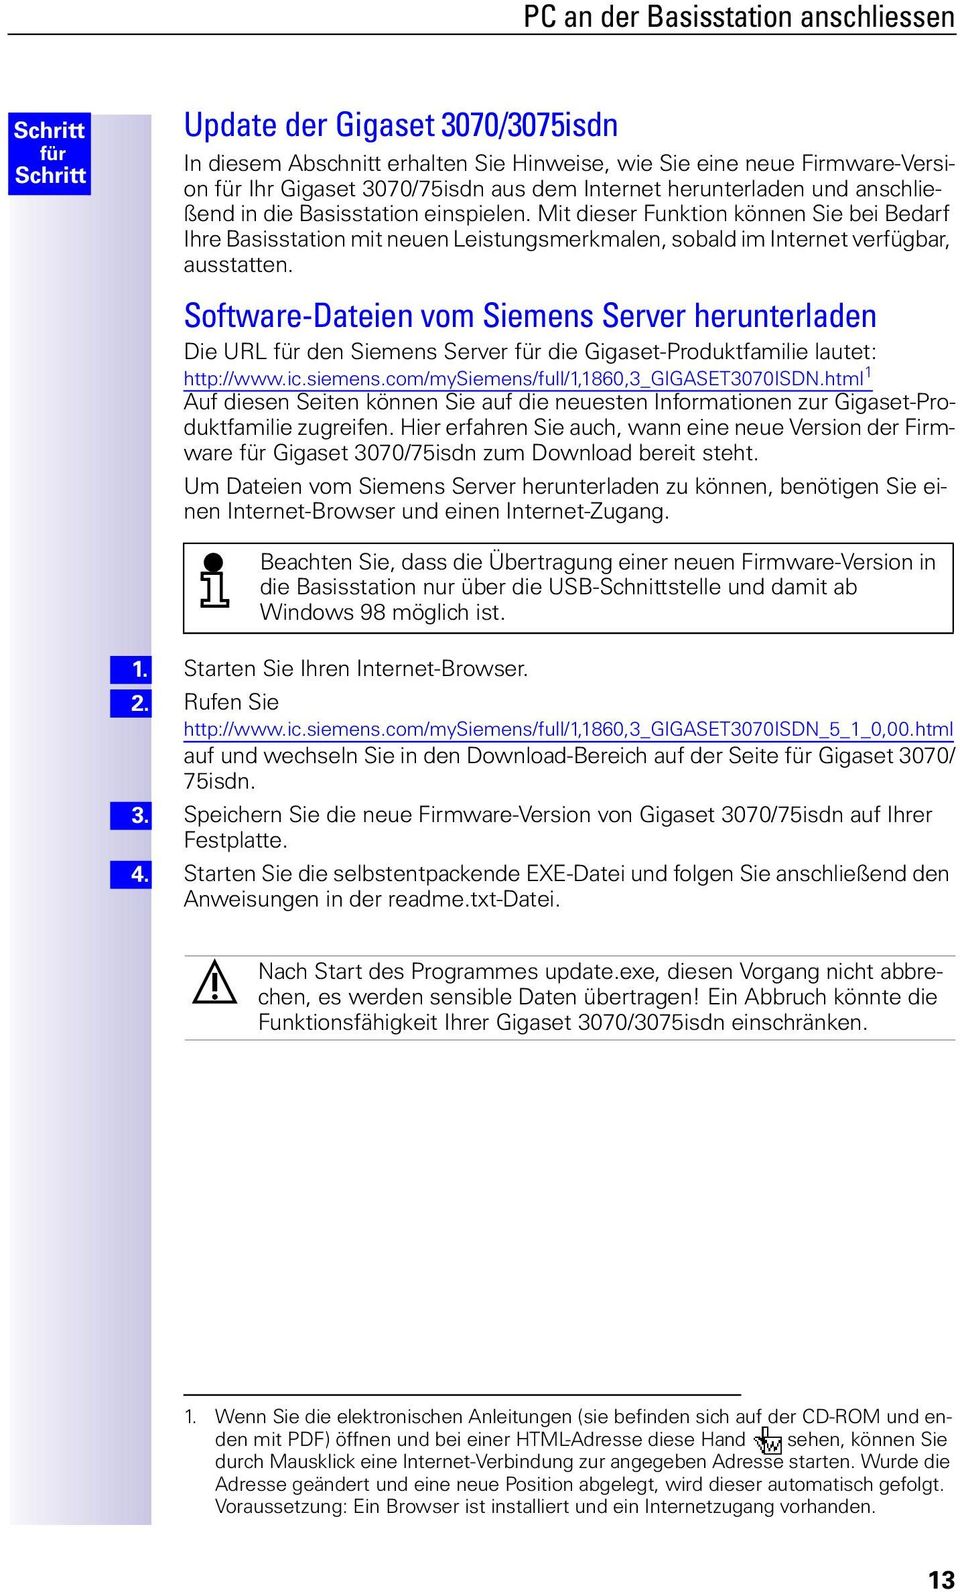 Software-Dateien vom Siemens Server herunterladen Die URL den Siemens Server die Gigaset-Produktfamilie lautet: http://www.ic.siemens.com/mysiemens/full/1,1860,3_gigaset3070isdn.